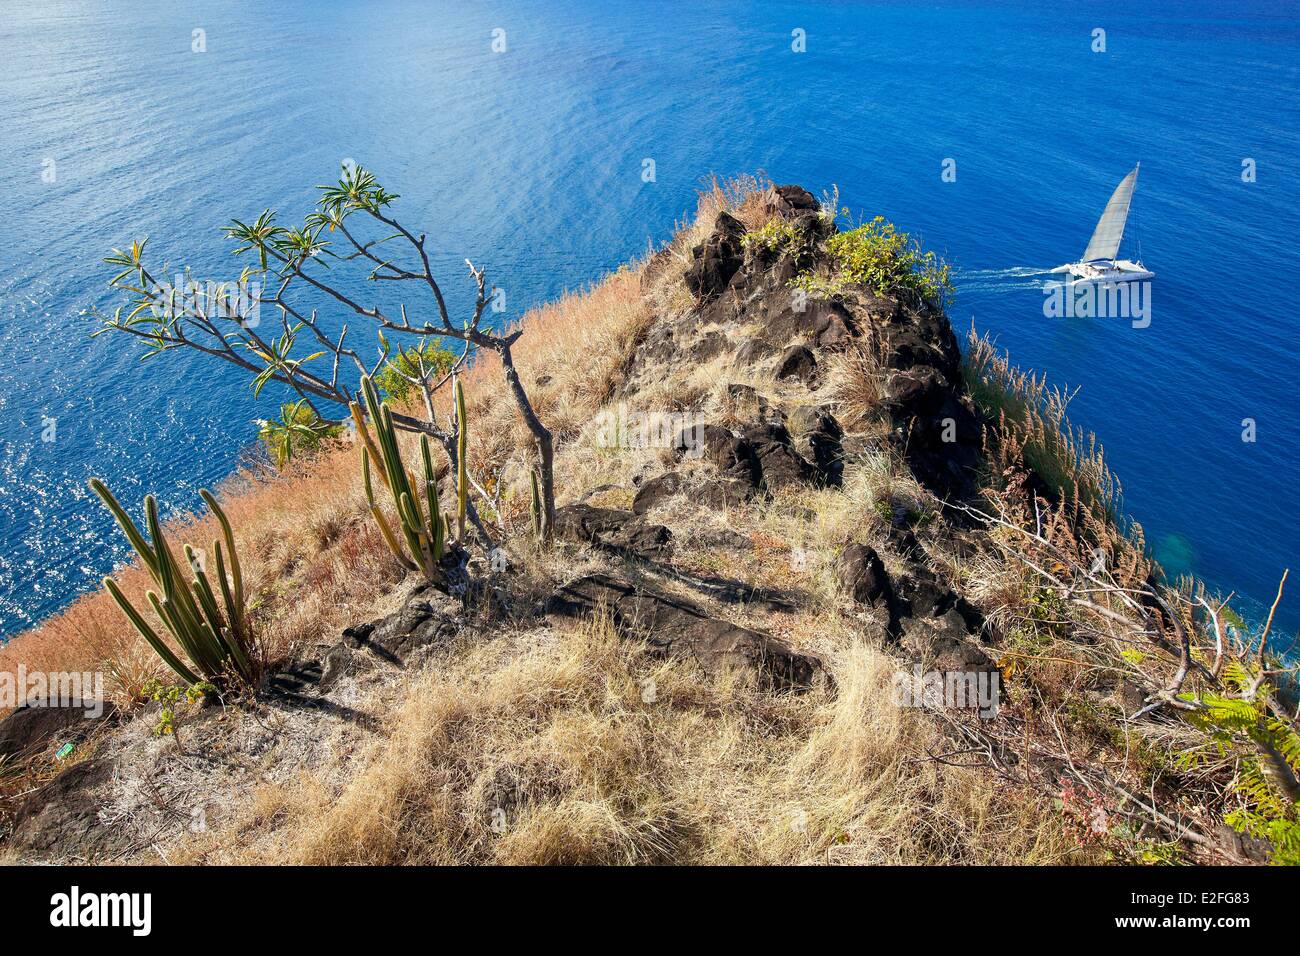 West Indies Karibische Inseln des Wind Saint Lucia Nord Insel Gros Islet Bezirk Rodney Bay Pigeon Island National Park Stockfoto